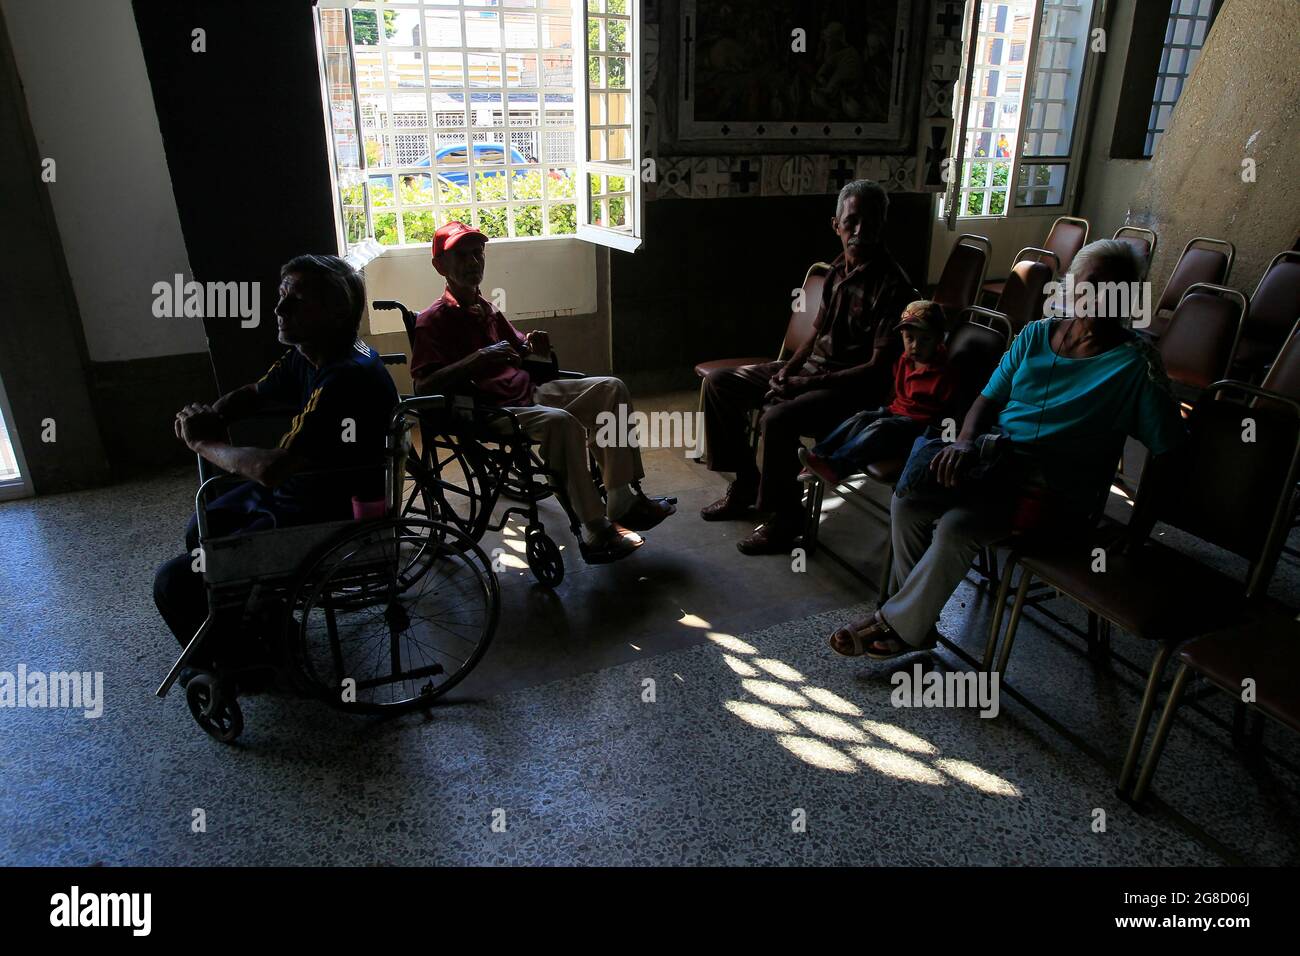 Maracaibo, Venezuela. Gli anziani disabili aspettano in un centro di beneficenza che offre loro pranzi. Foto di: José Bula Foto Stock